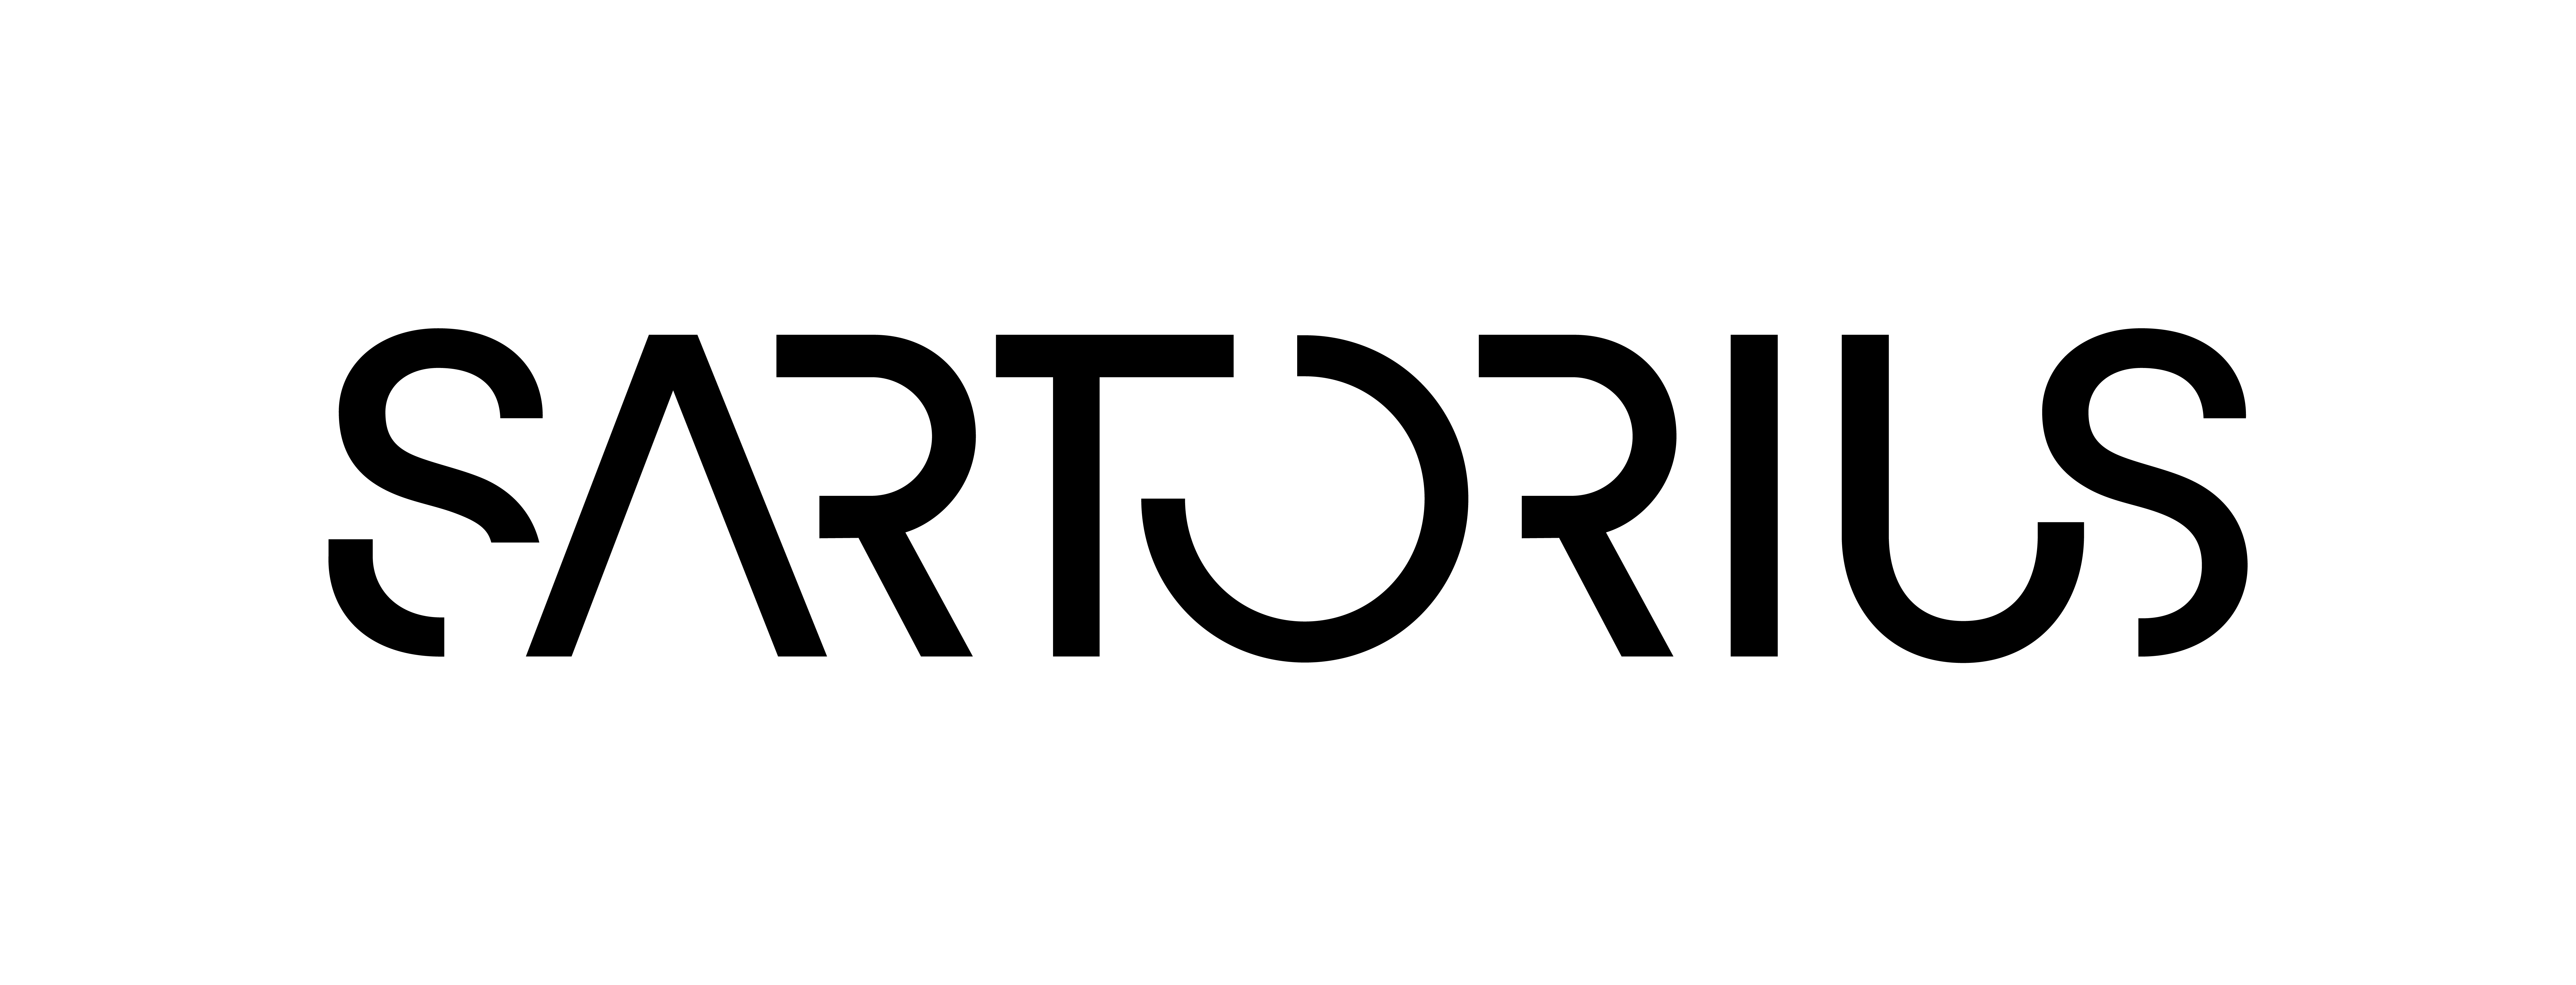 Sartorius Polycarbonate Connector